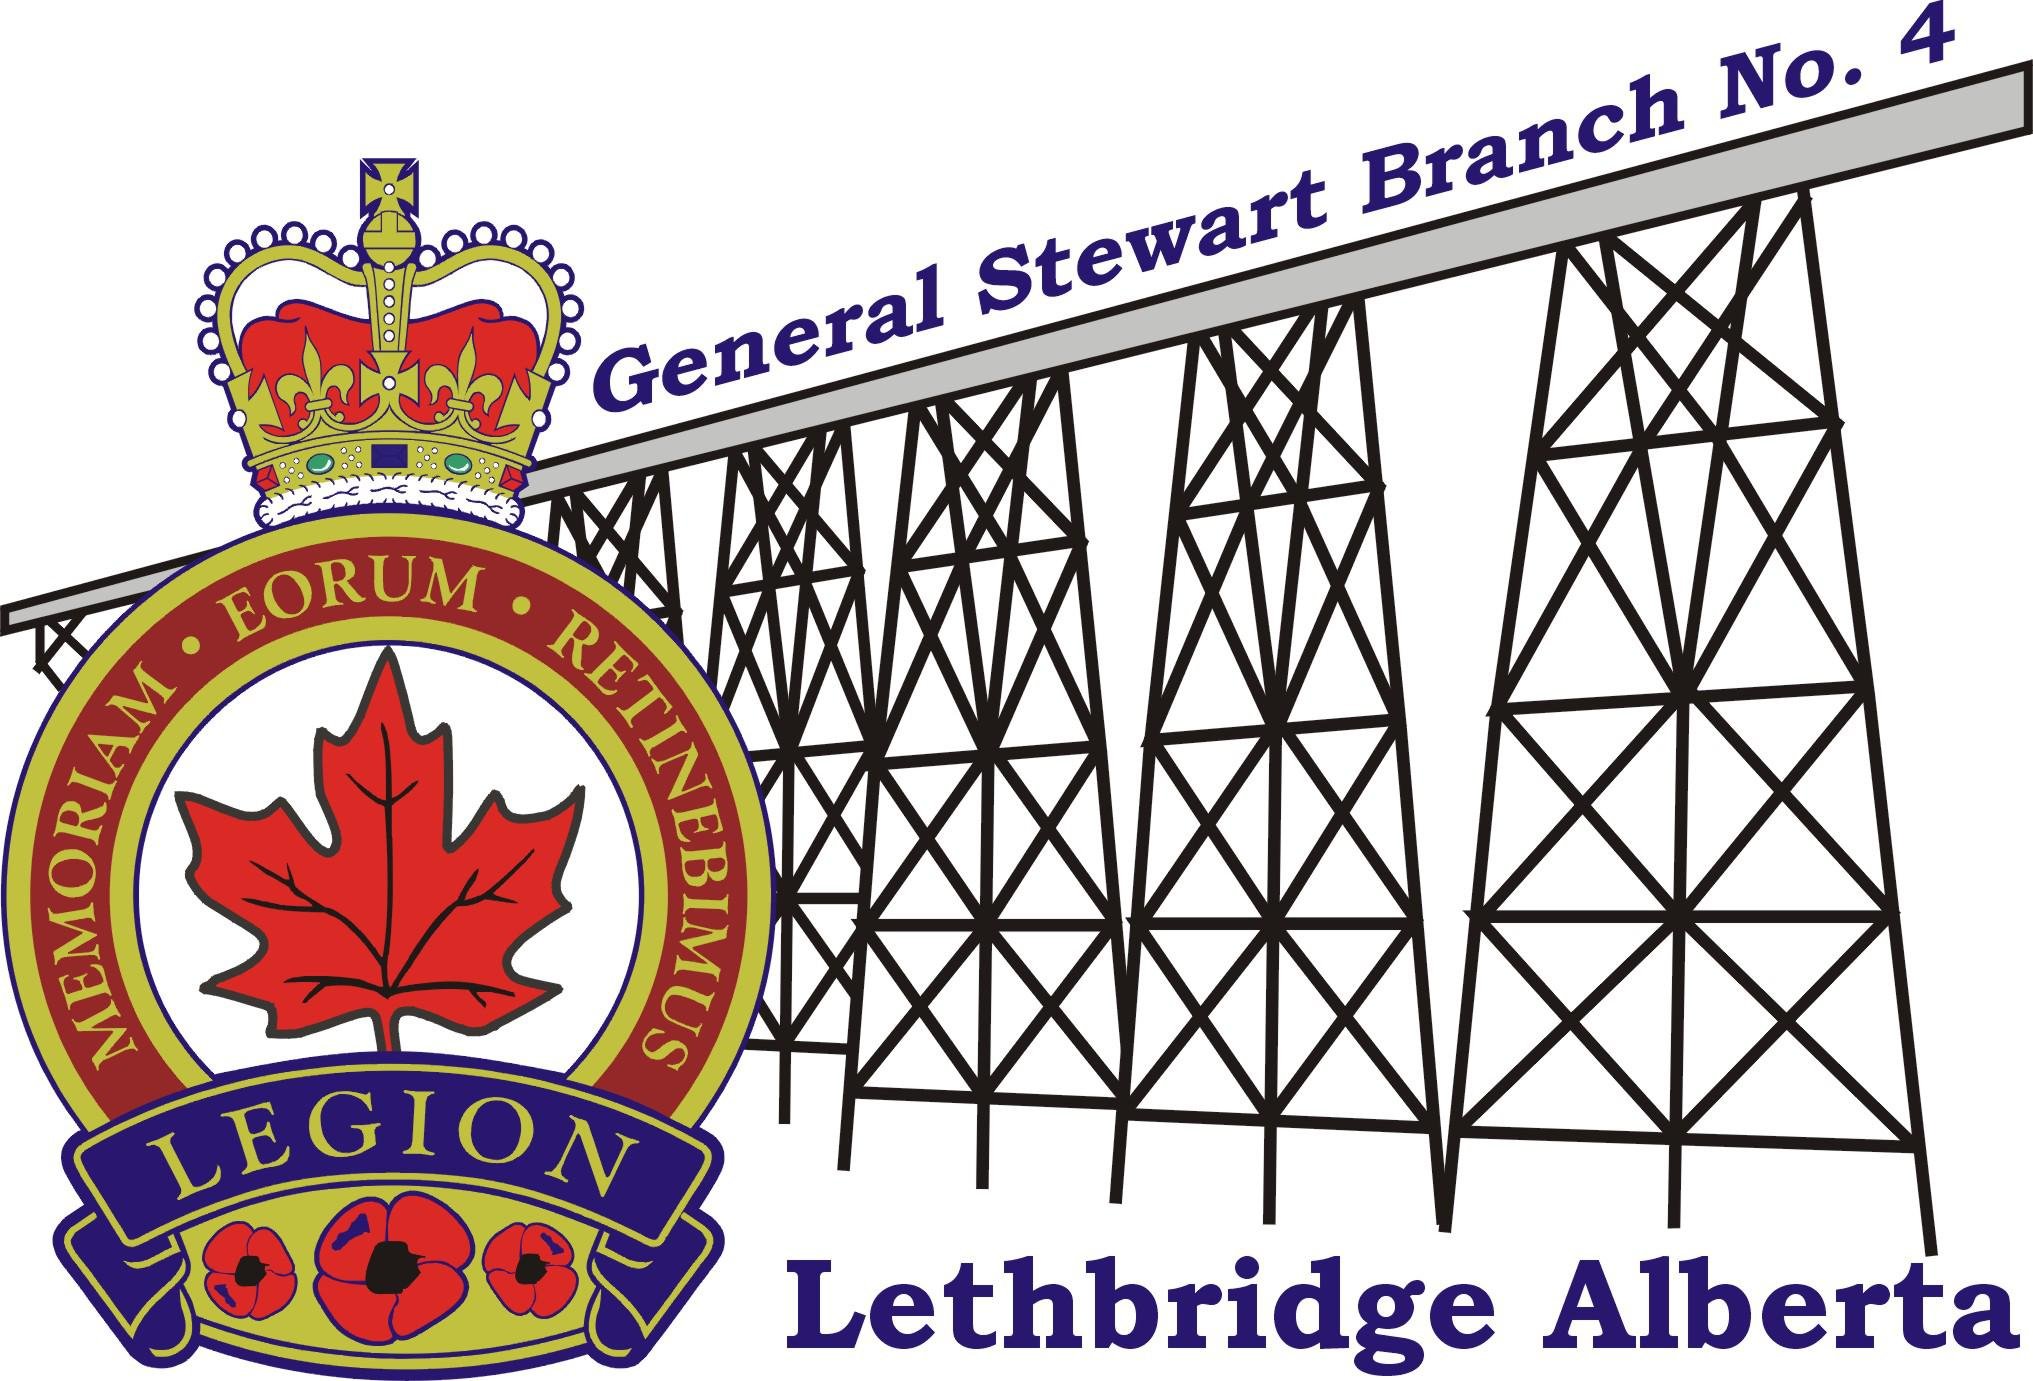 Royal Canadian Legion General Stewart Branch No.4